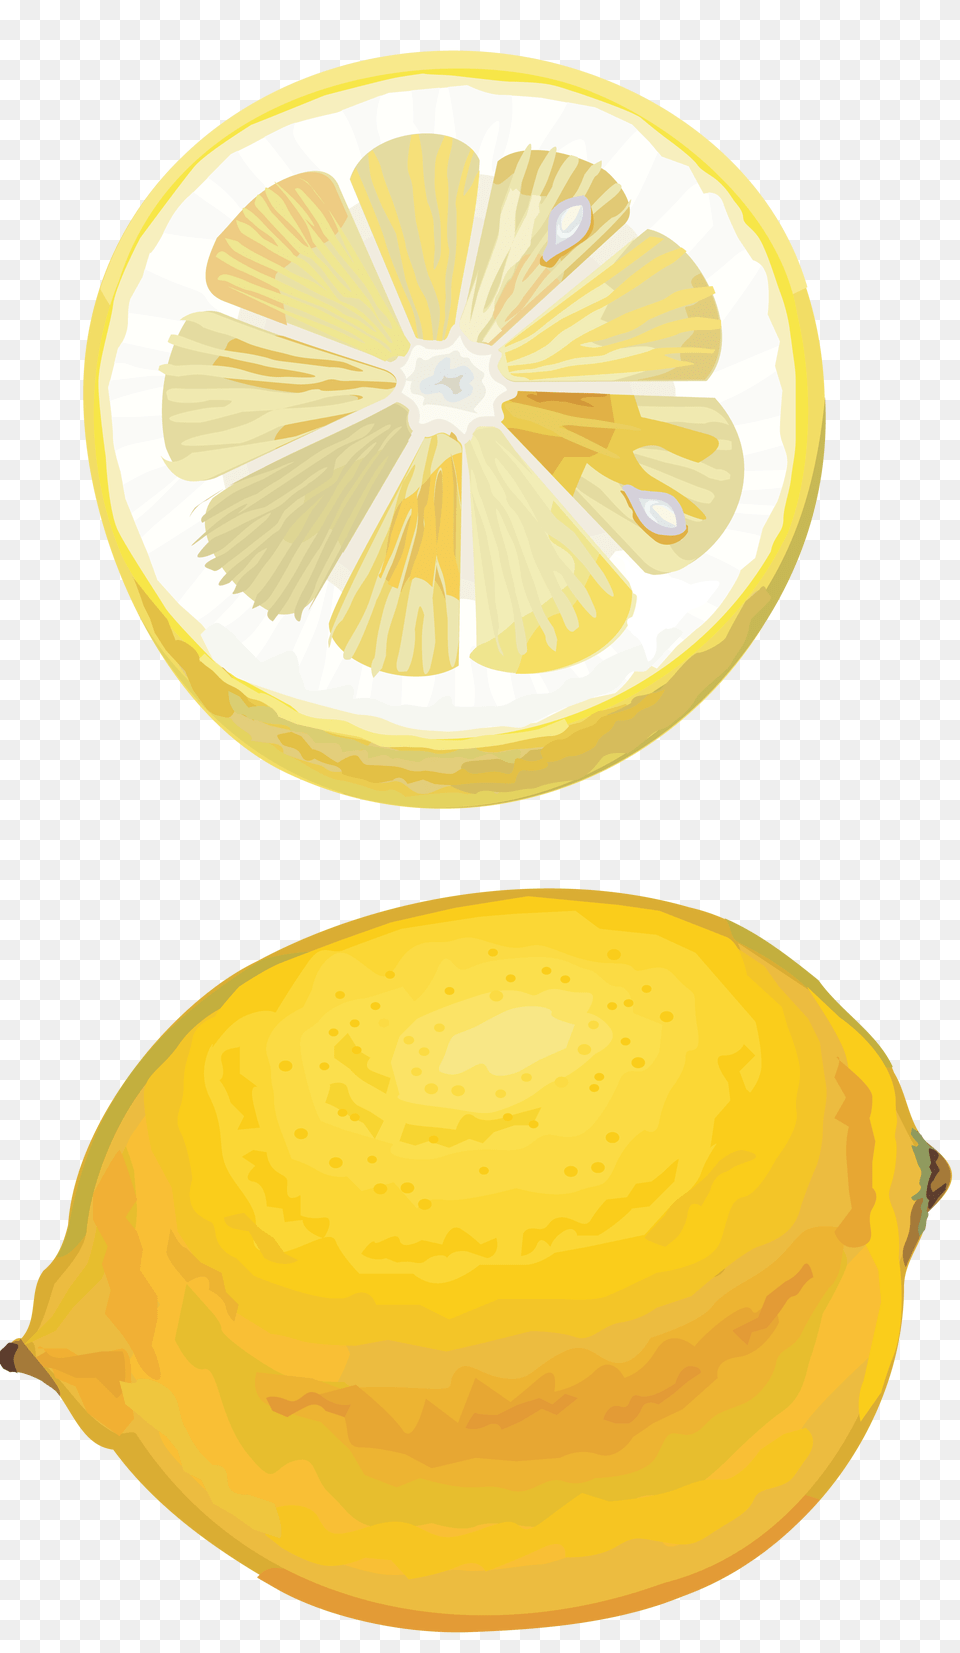 Lemon, Citrus Fruit, Food, Fruit, Plant Free Png